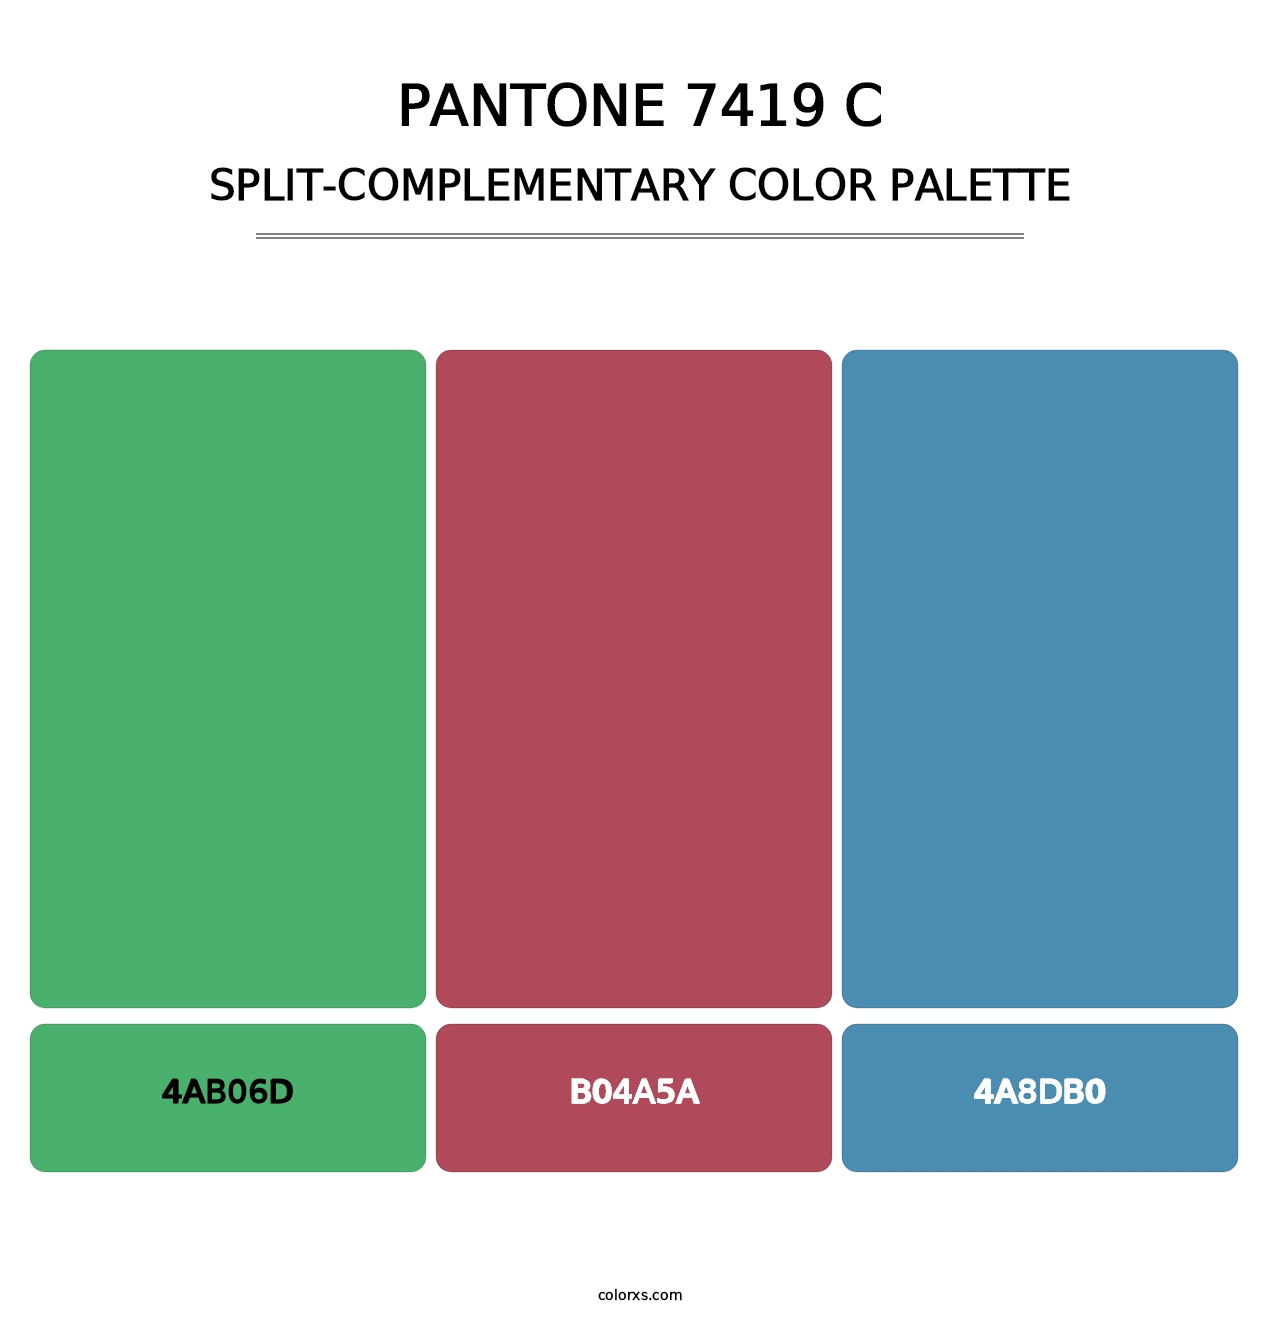 PANTONE 7419 C - Split-Complementary Color Palette